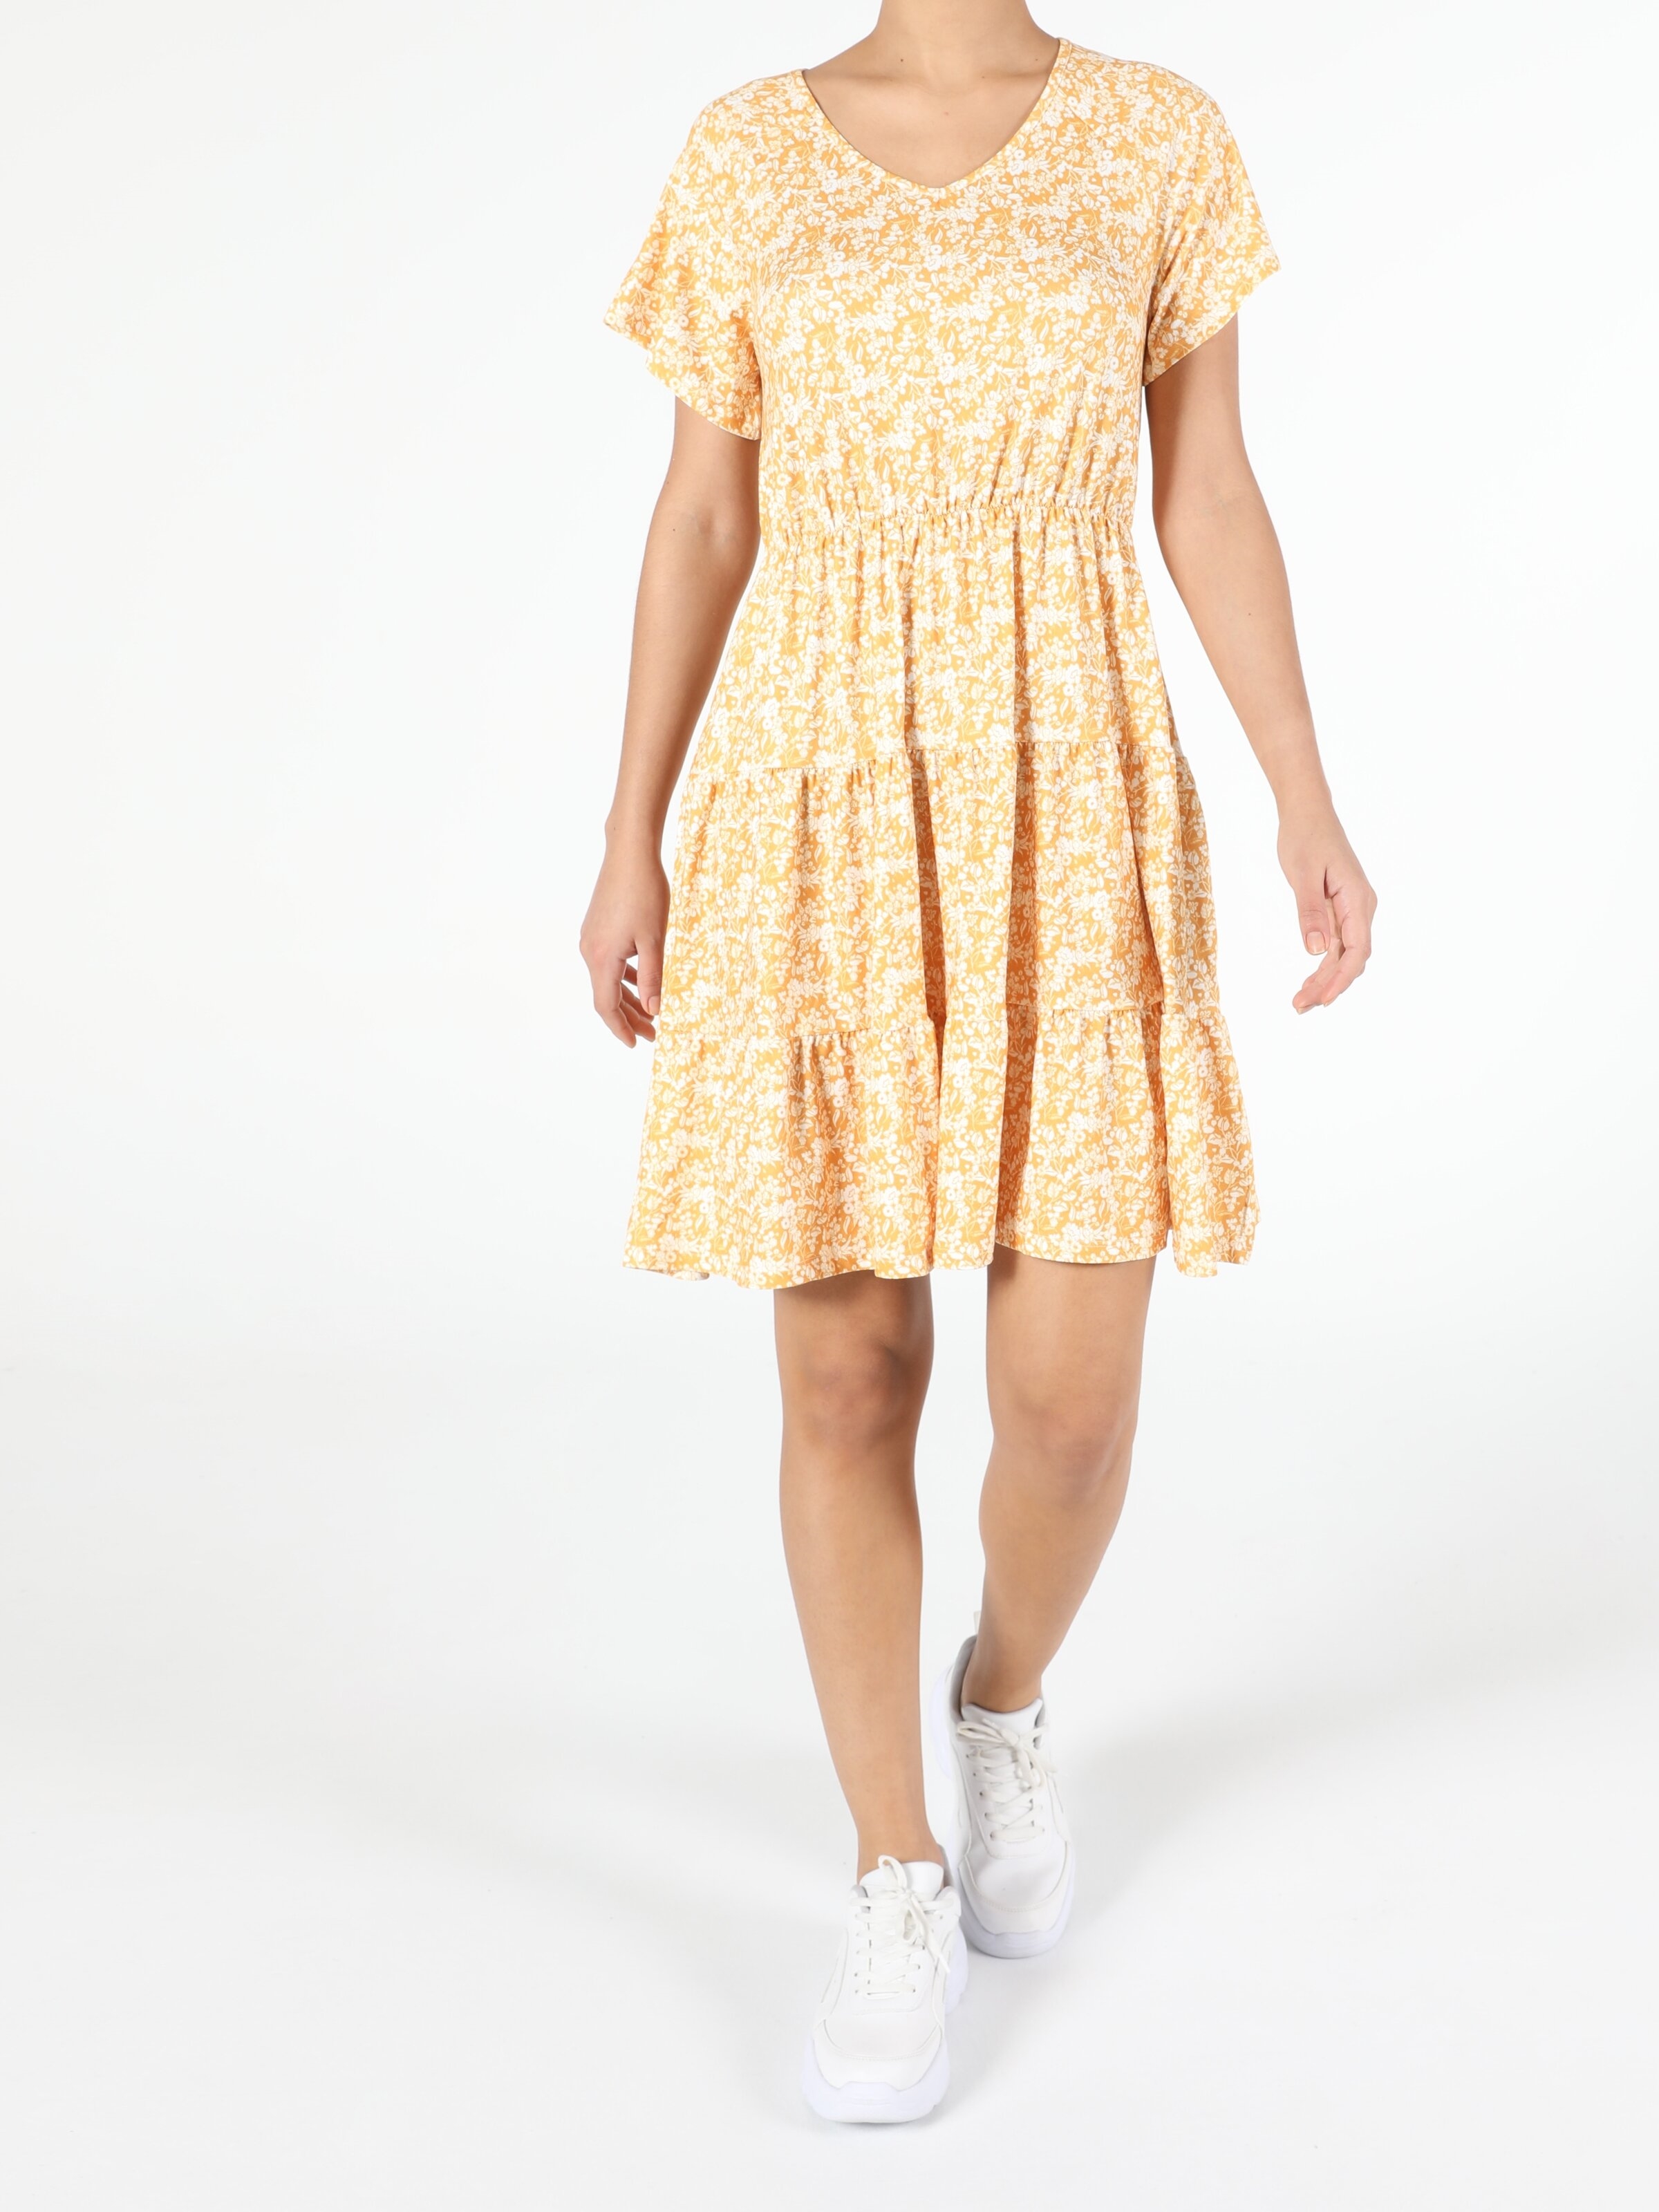 Показати інформацію про Сукня Жіноча Жовта Класичного Крою Cl1053550